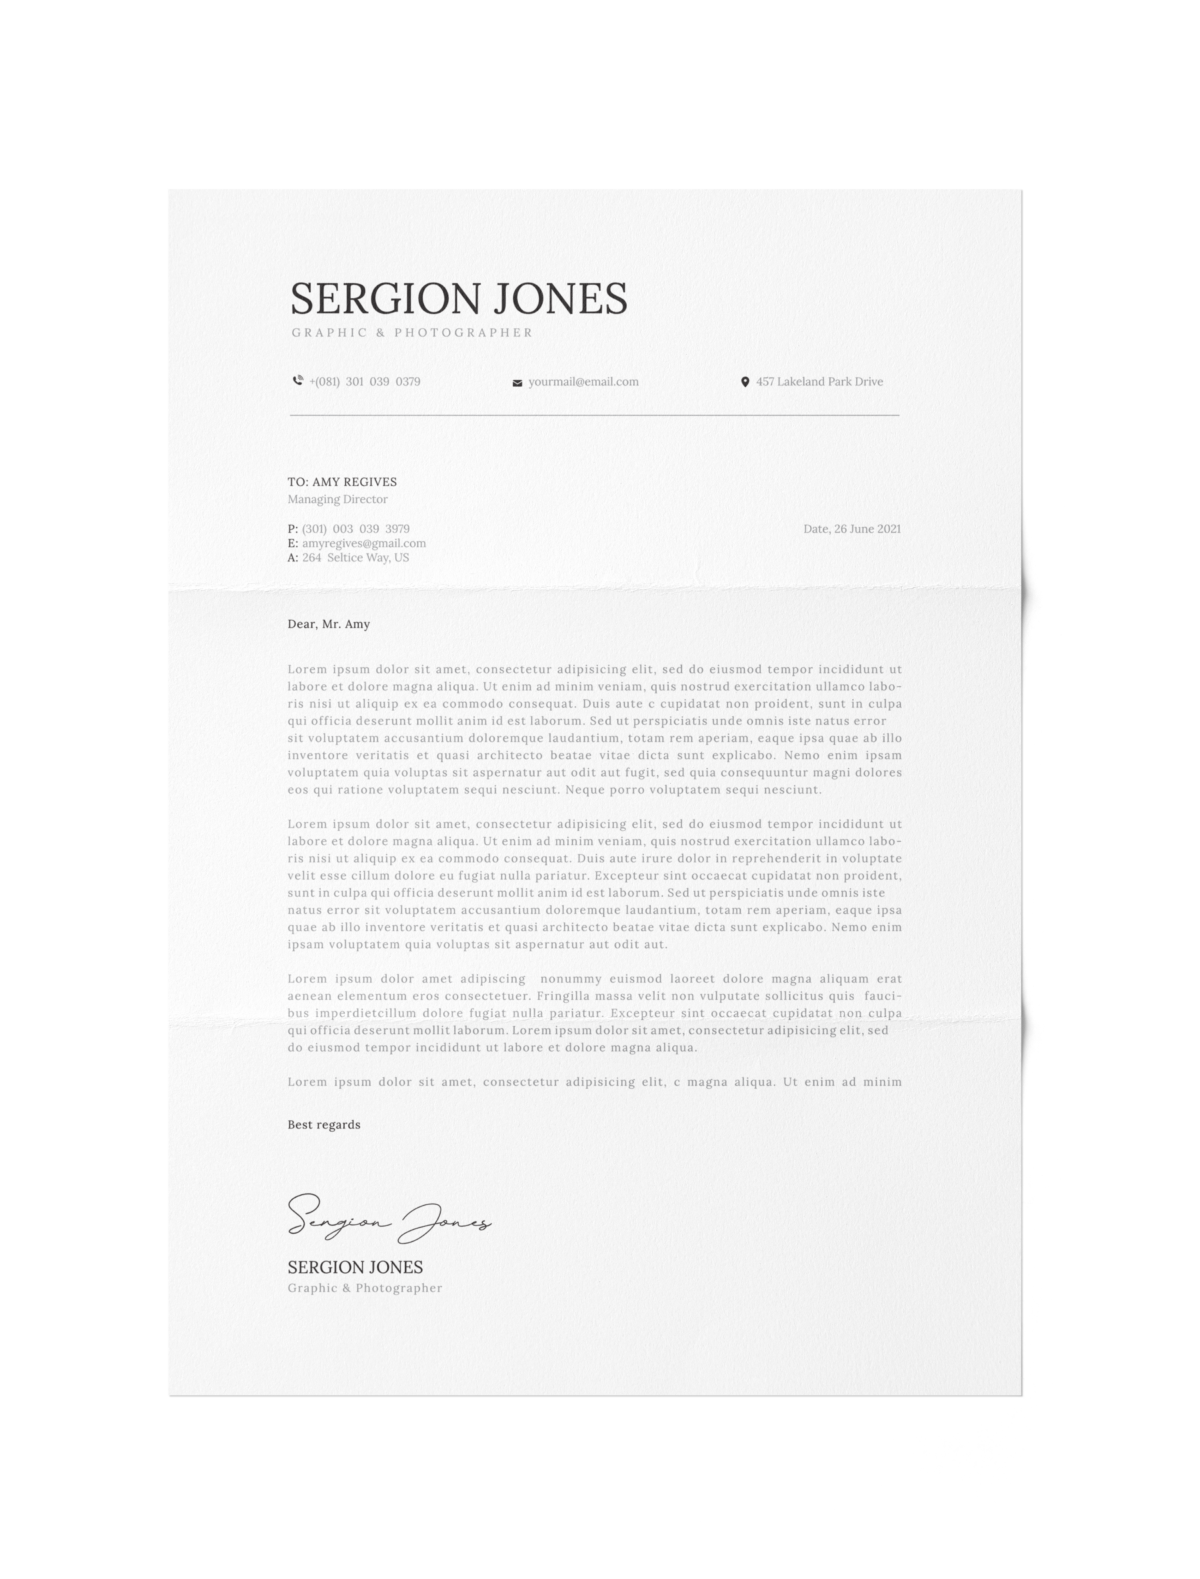 CV #65 Sergion Jones